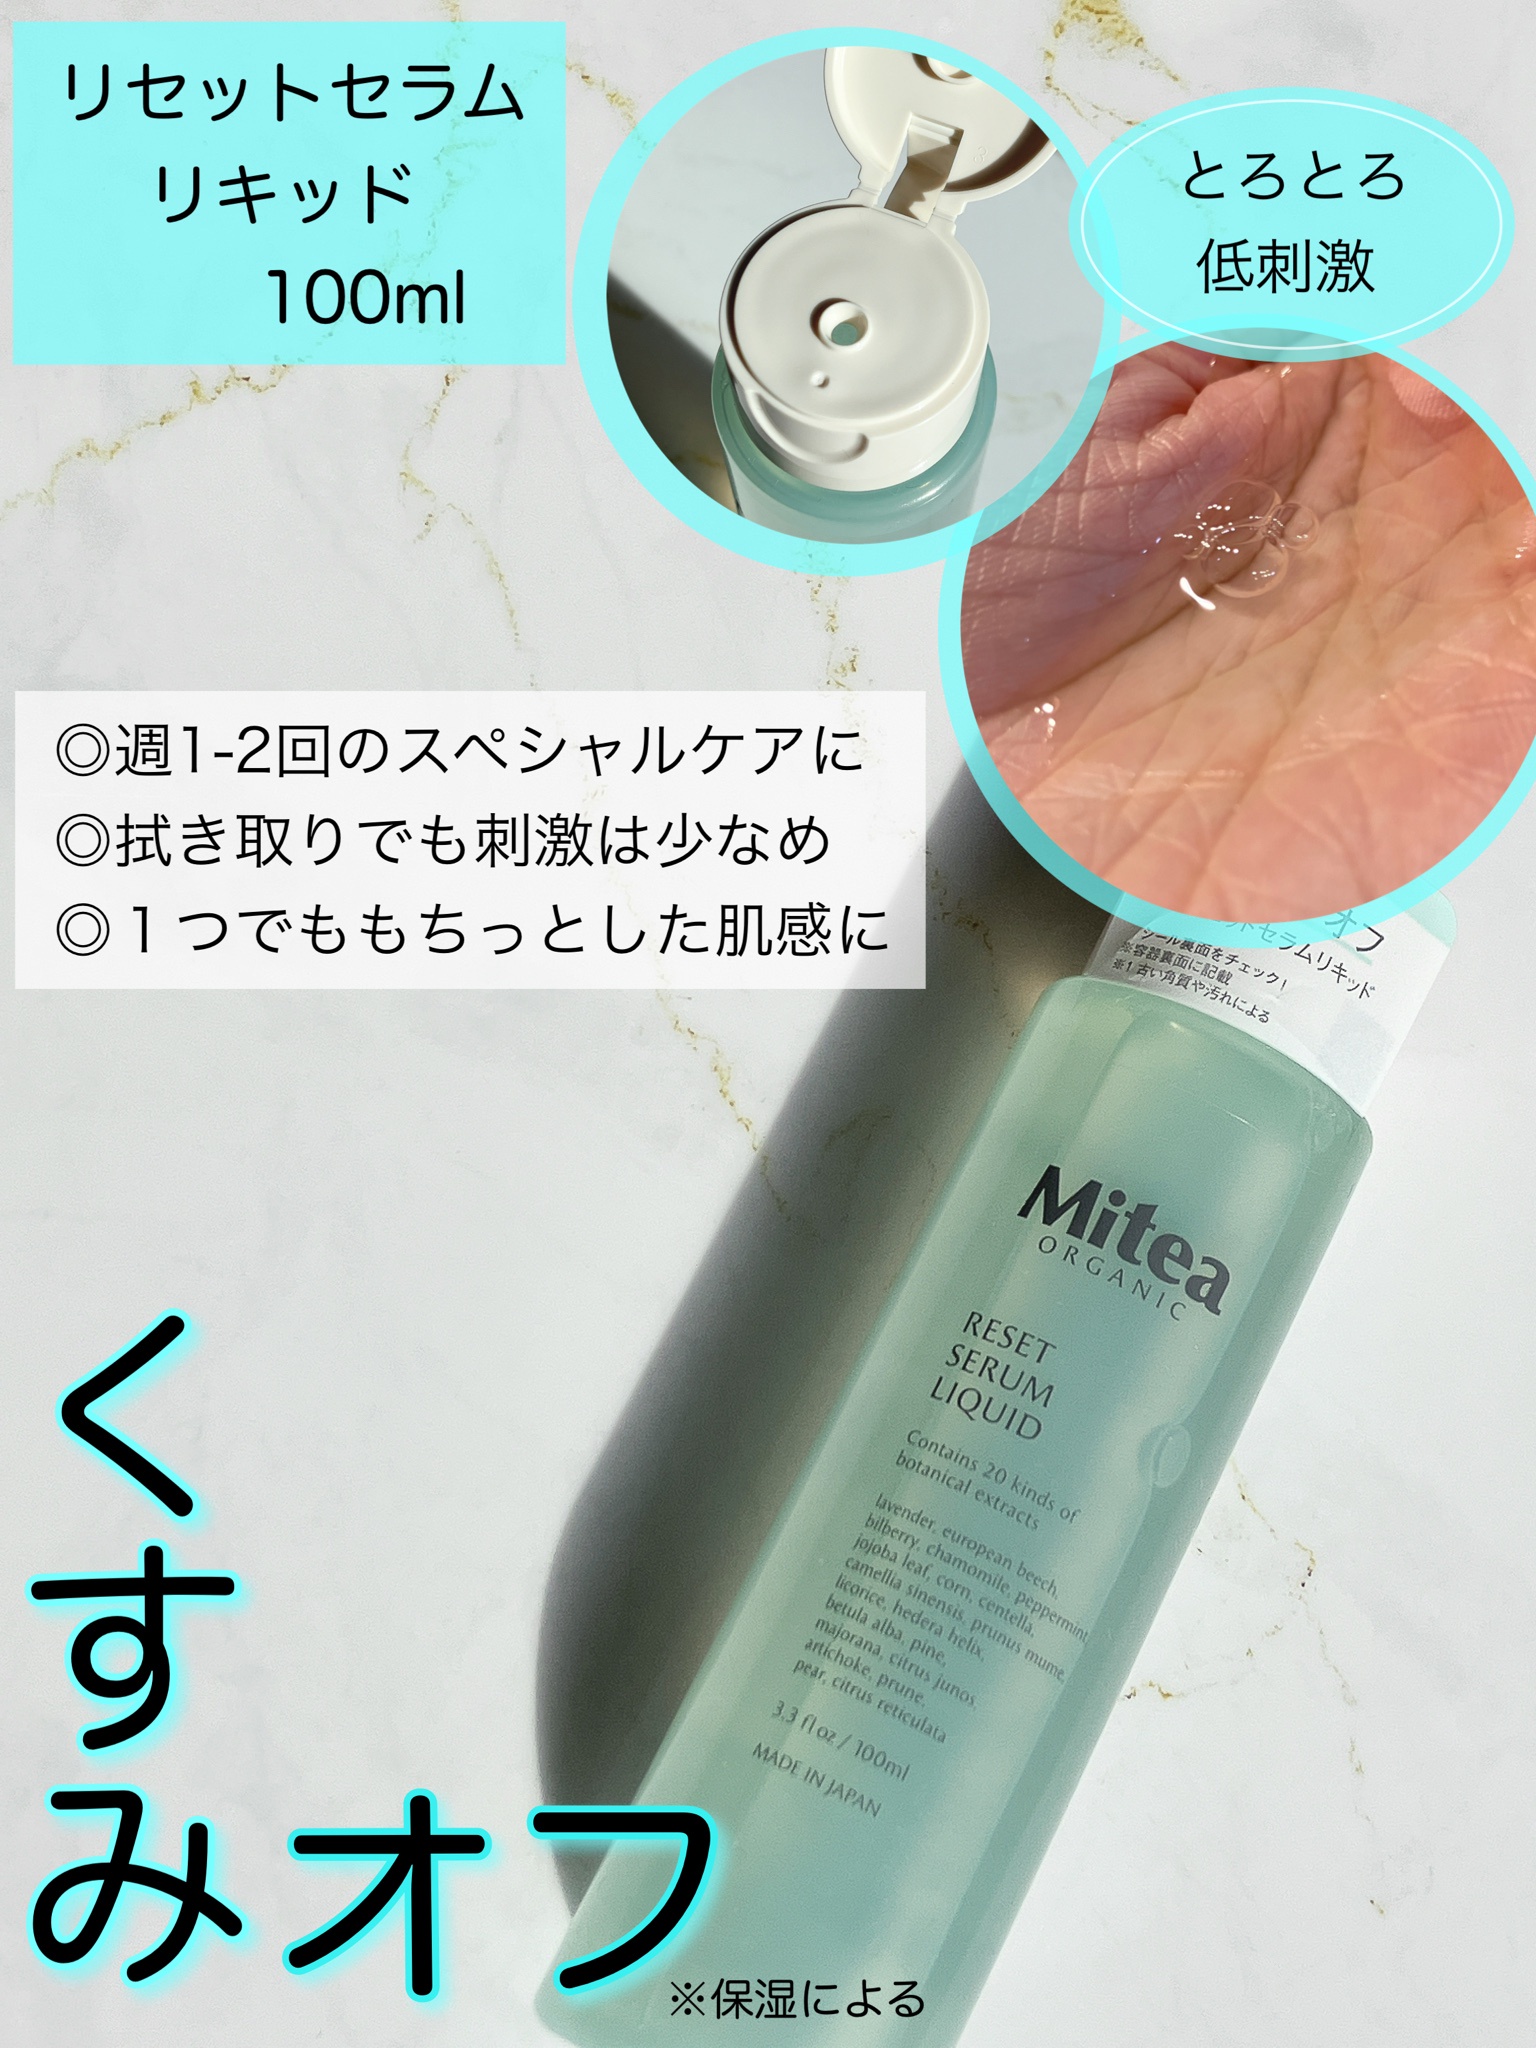 ミティア リセットセラムリキッド ふき取り化粧水 - 基礎化粧品